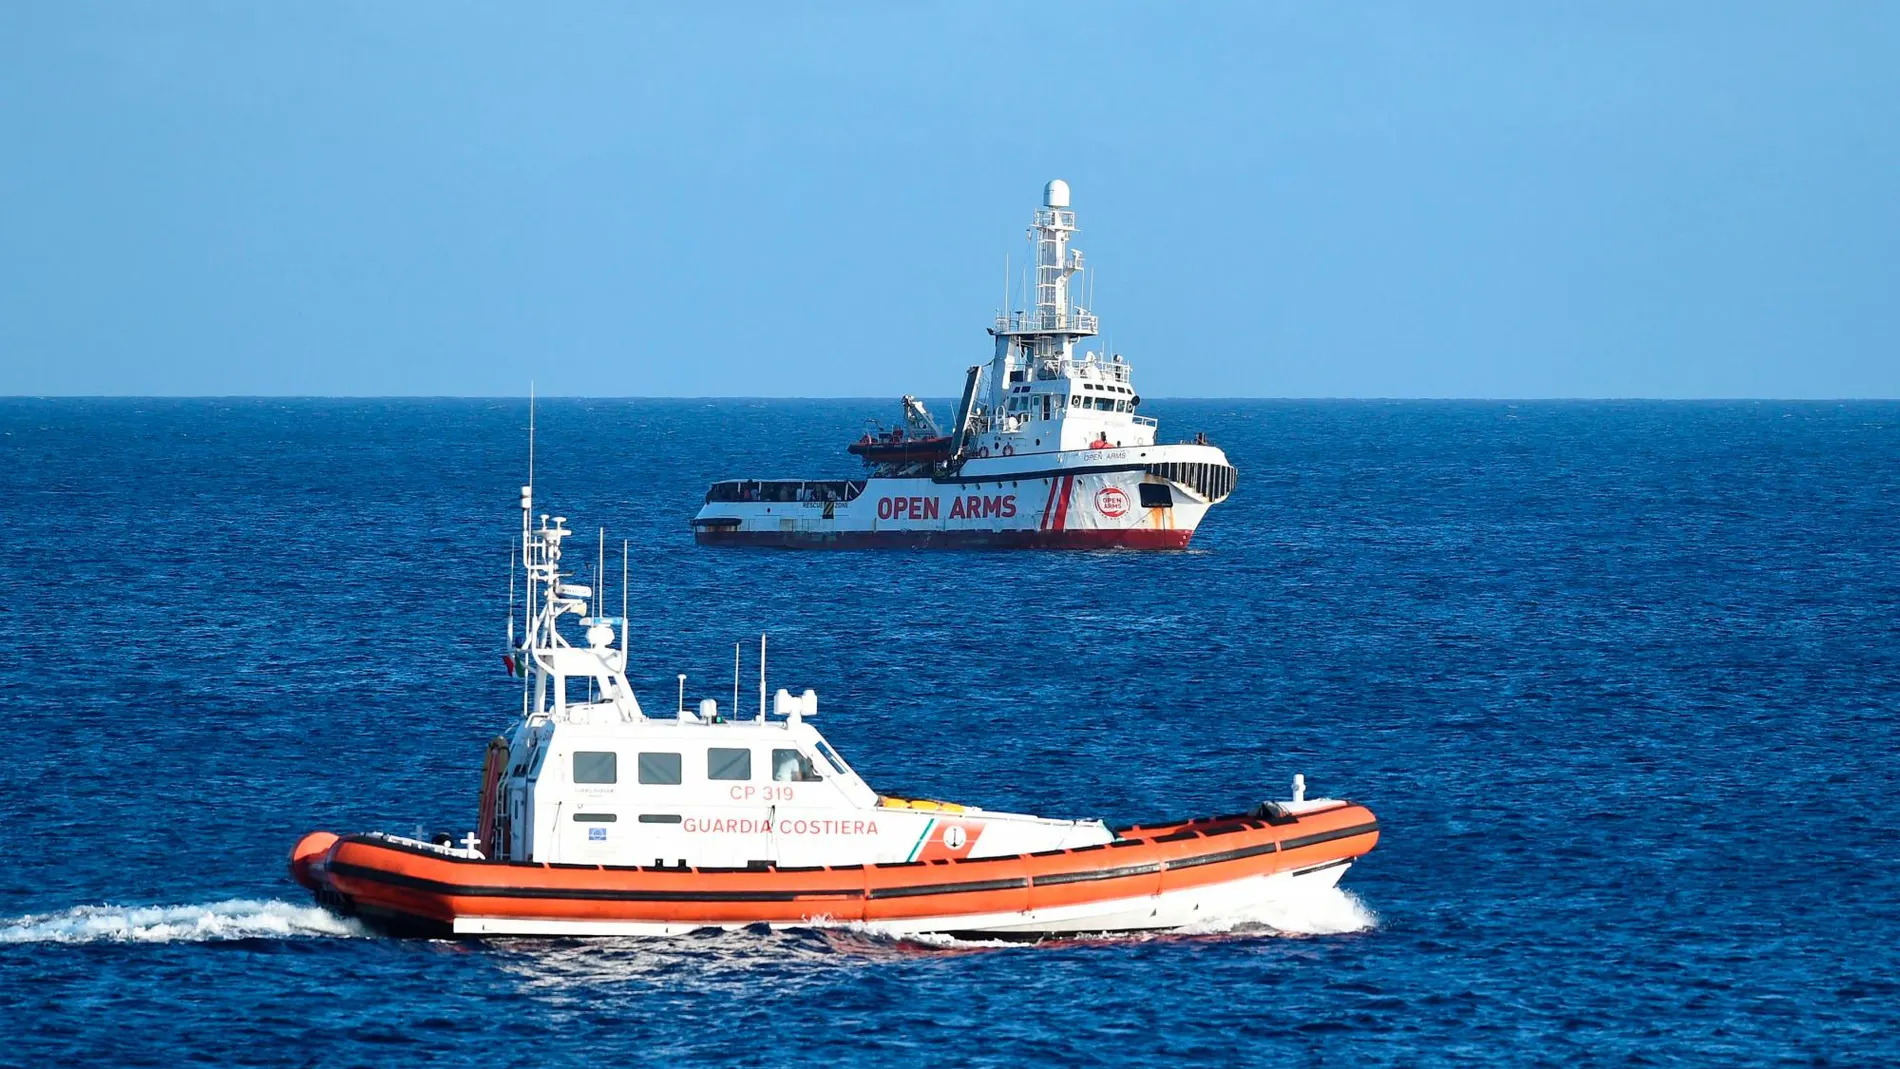 El barco de Open Arms siendo vigilado por una unidad de la guardia costera italiana